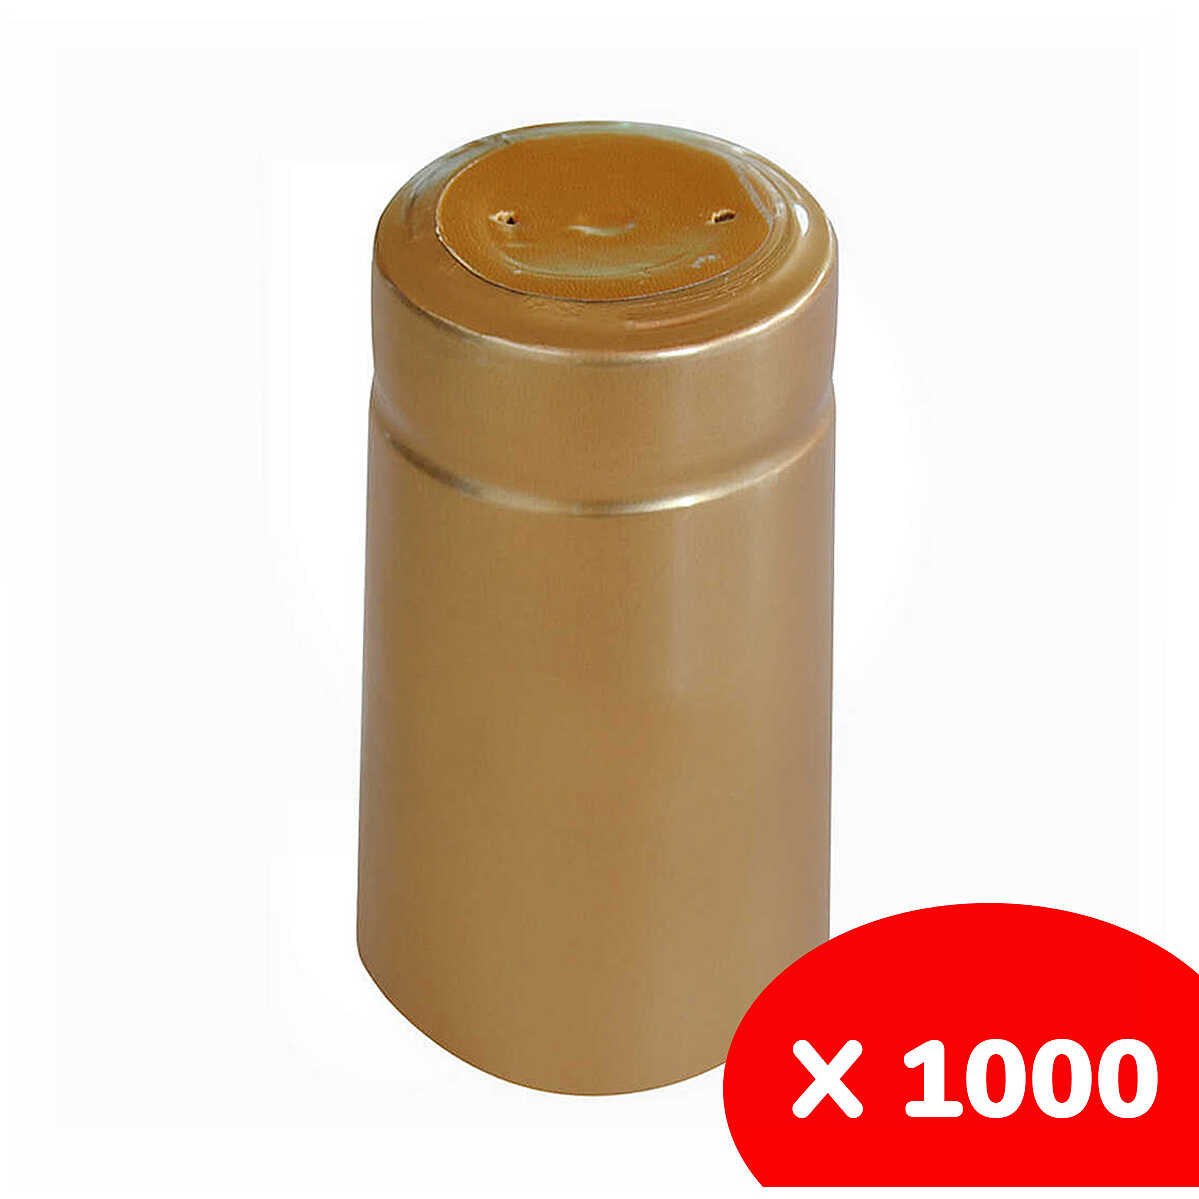 Capsula in PVC oro ⌀31 (1000 pezzi) Vino